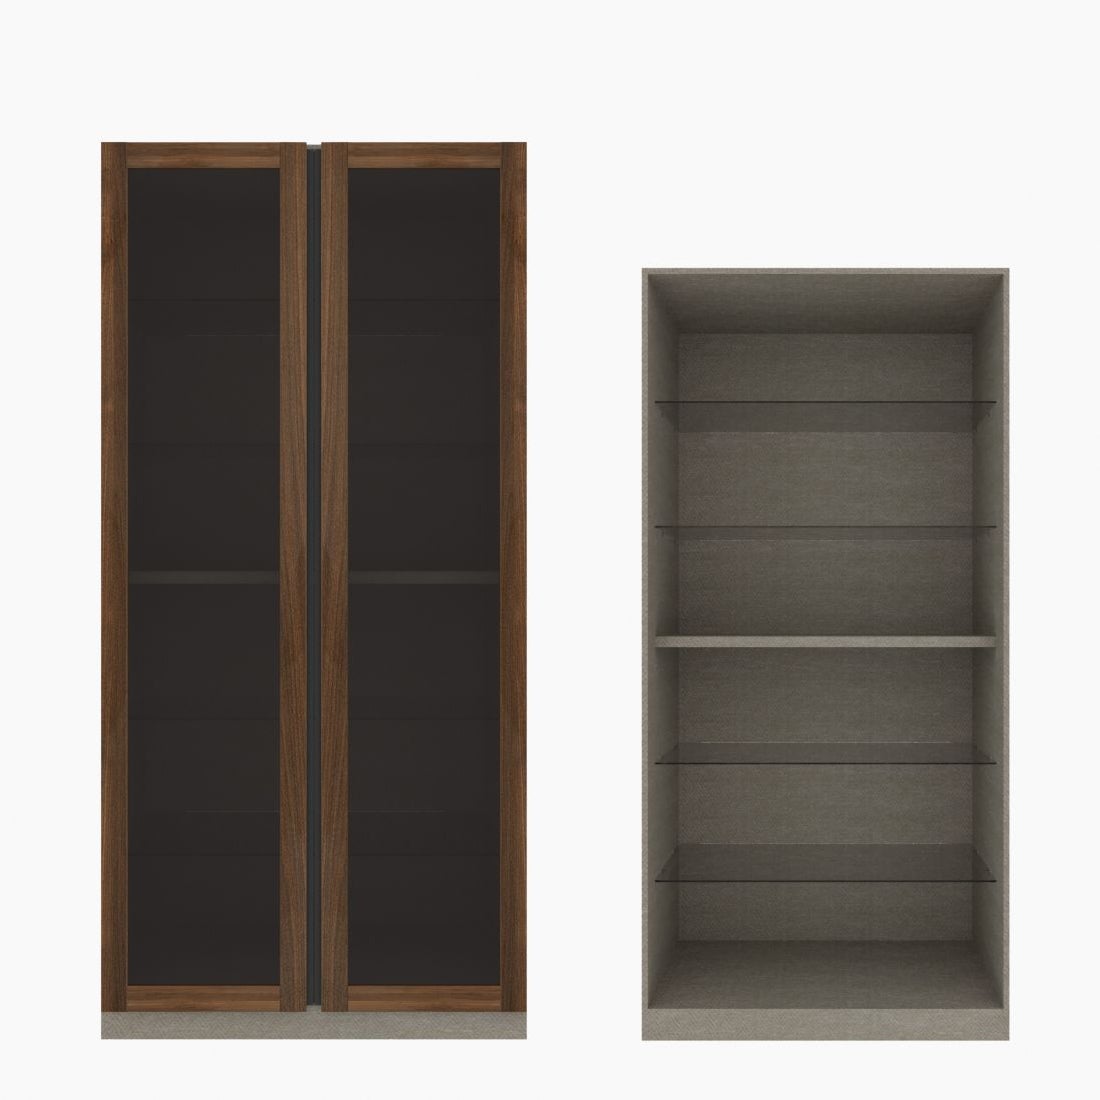 ตู้โชว์ชั้นกระจก OP-H ขนาด 100 ซม. รุ่น Blox สีไม้เข้ม&กระจกชาดำ01